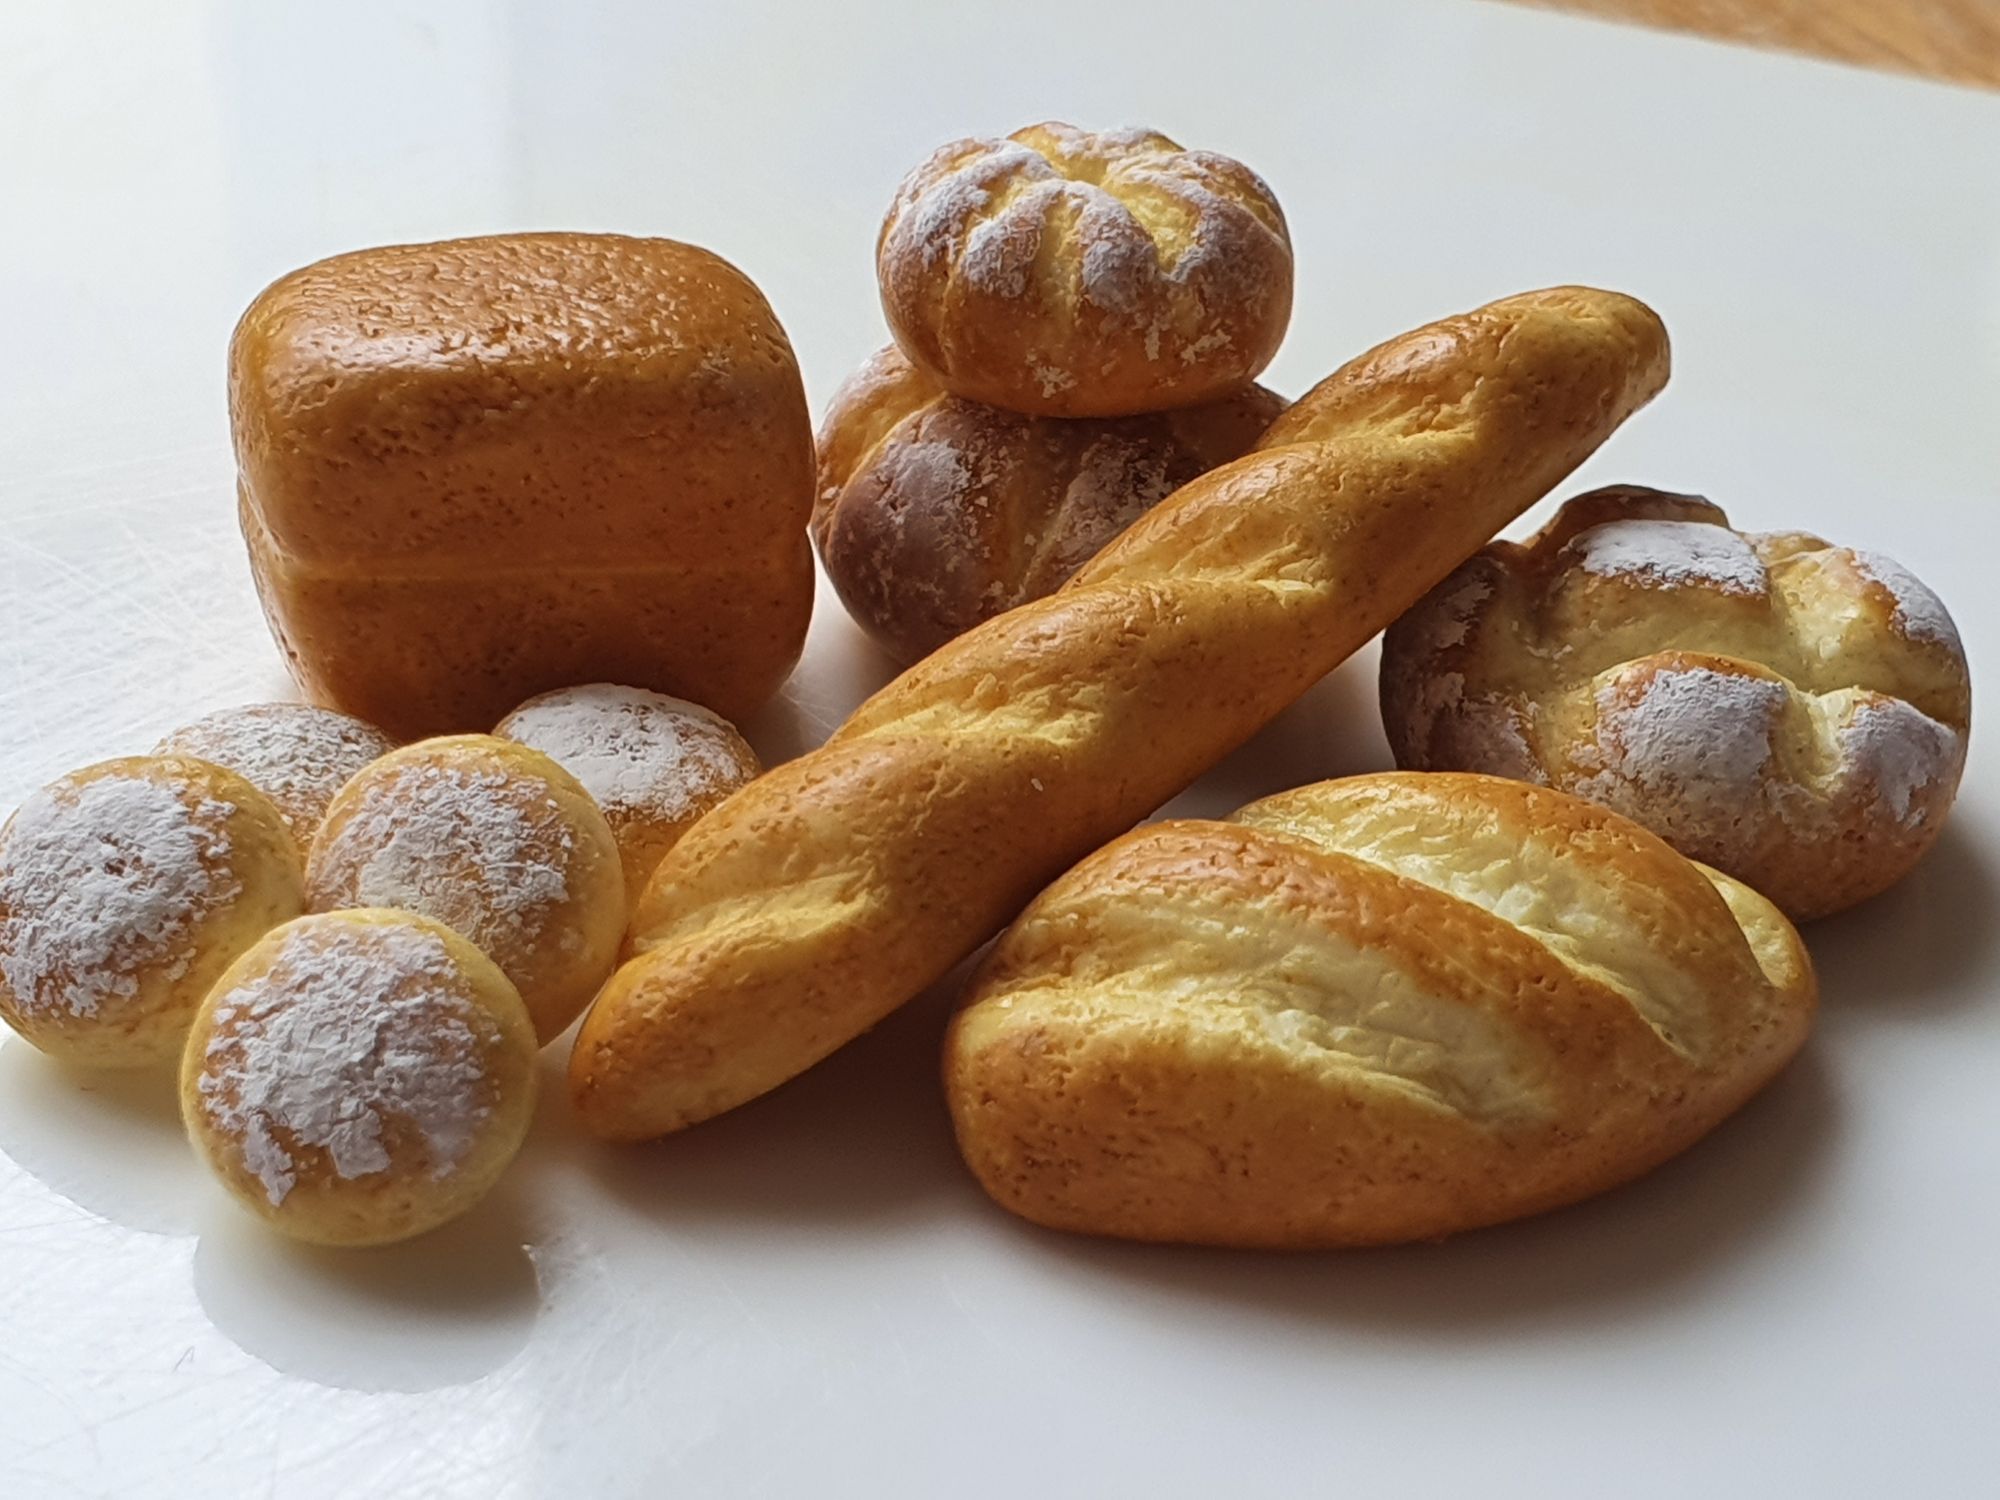 Mini bread orders booming